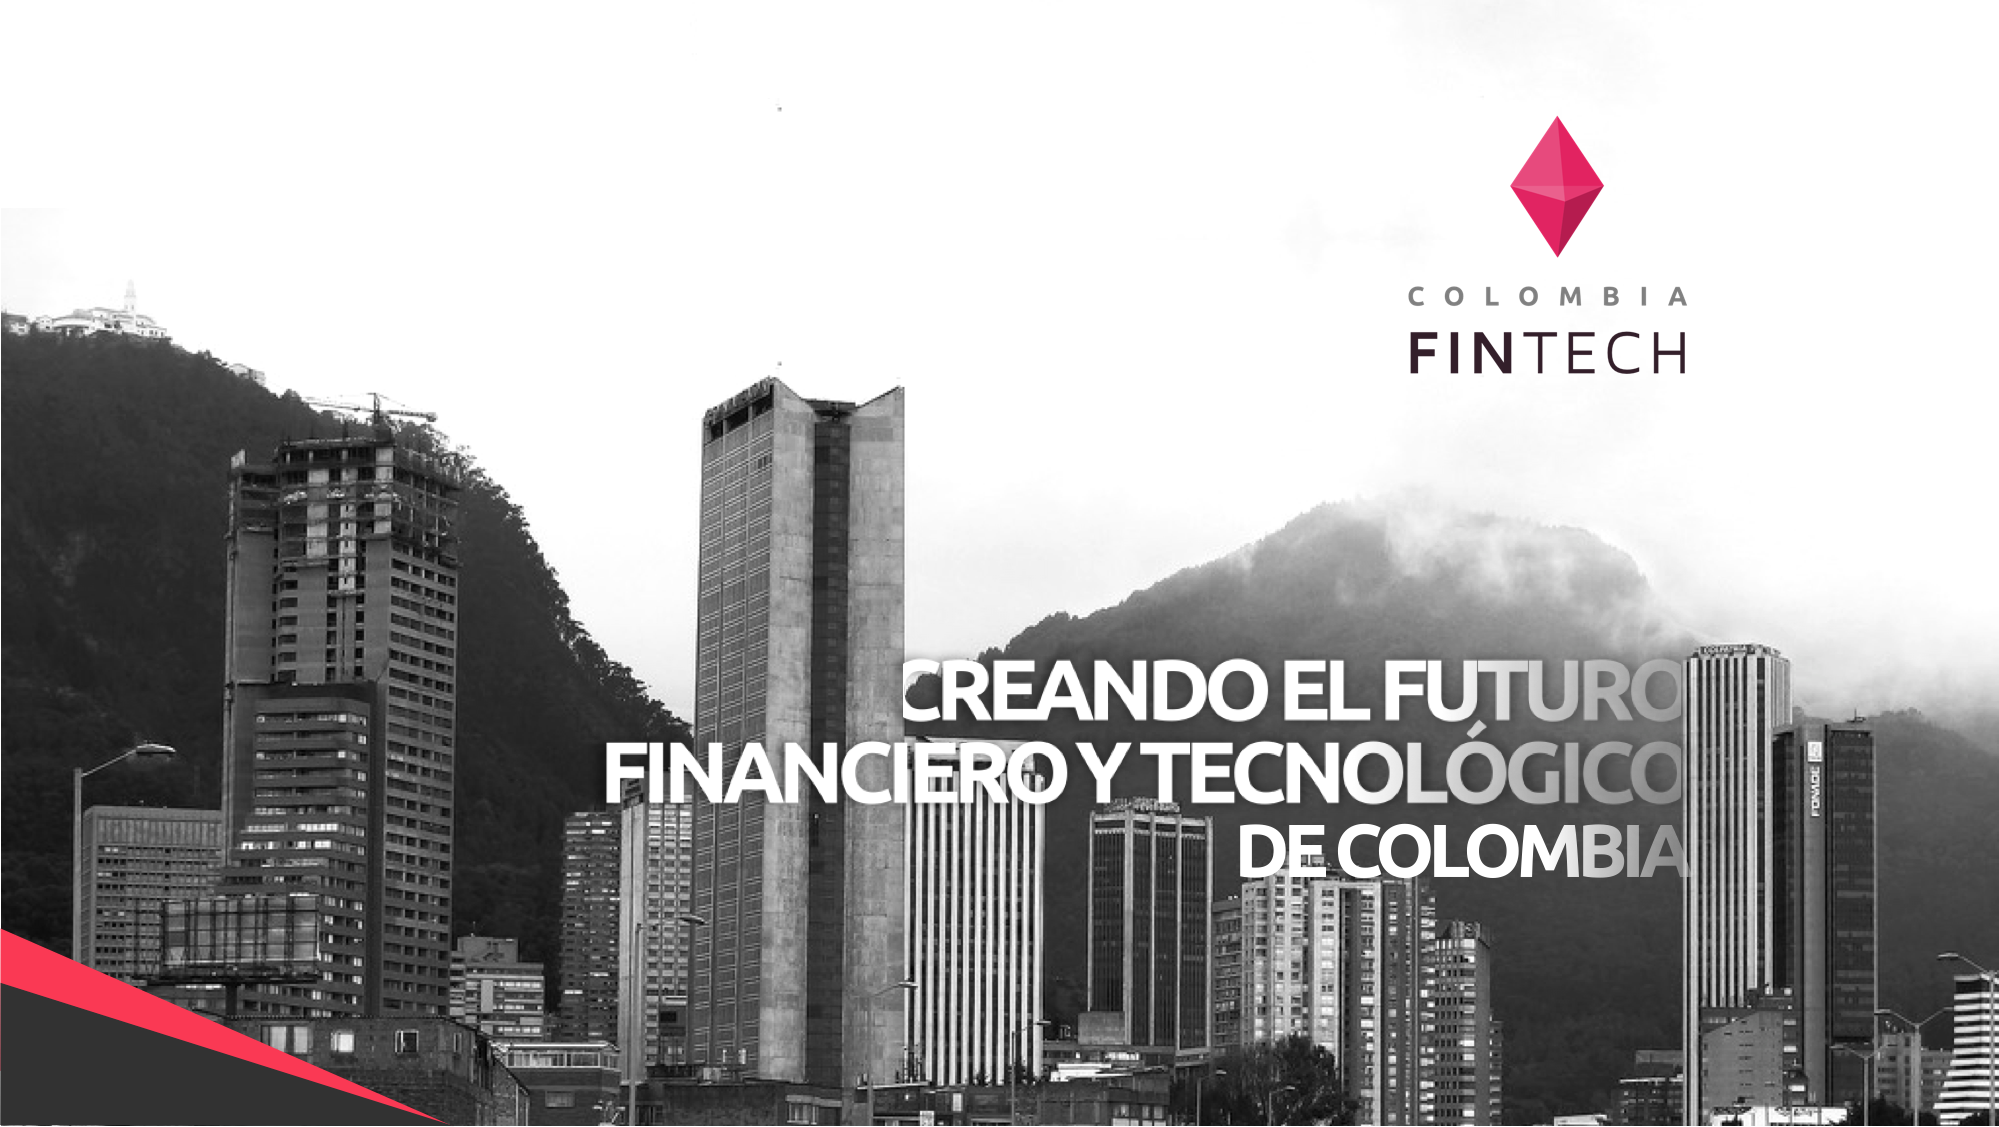 www.colombiafintech.co